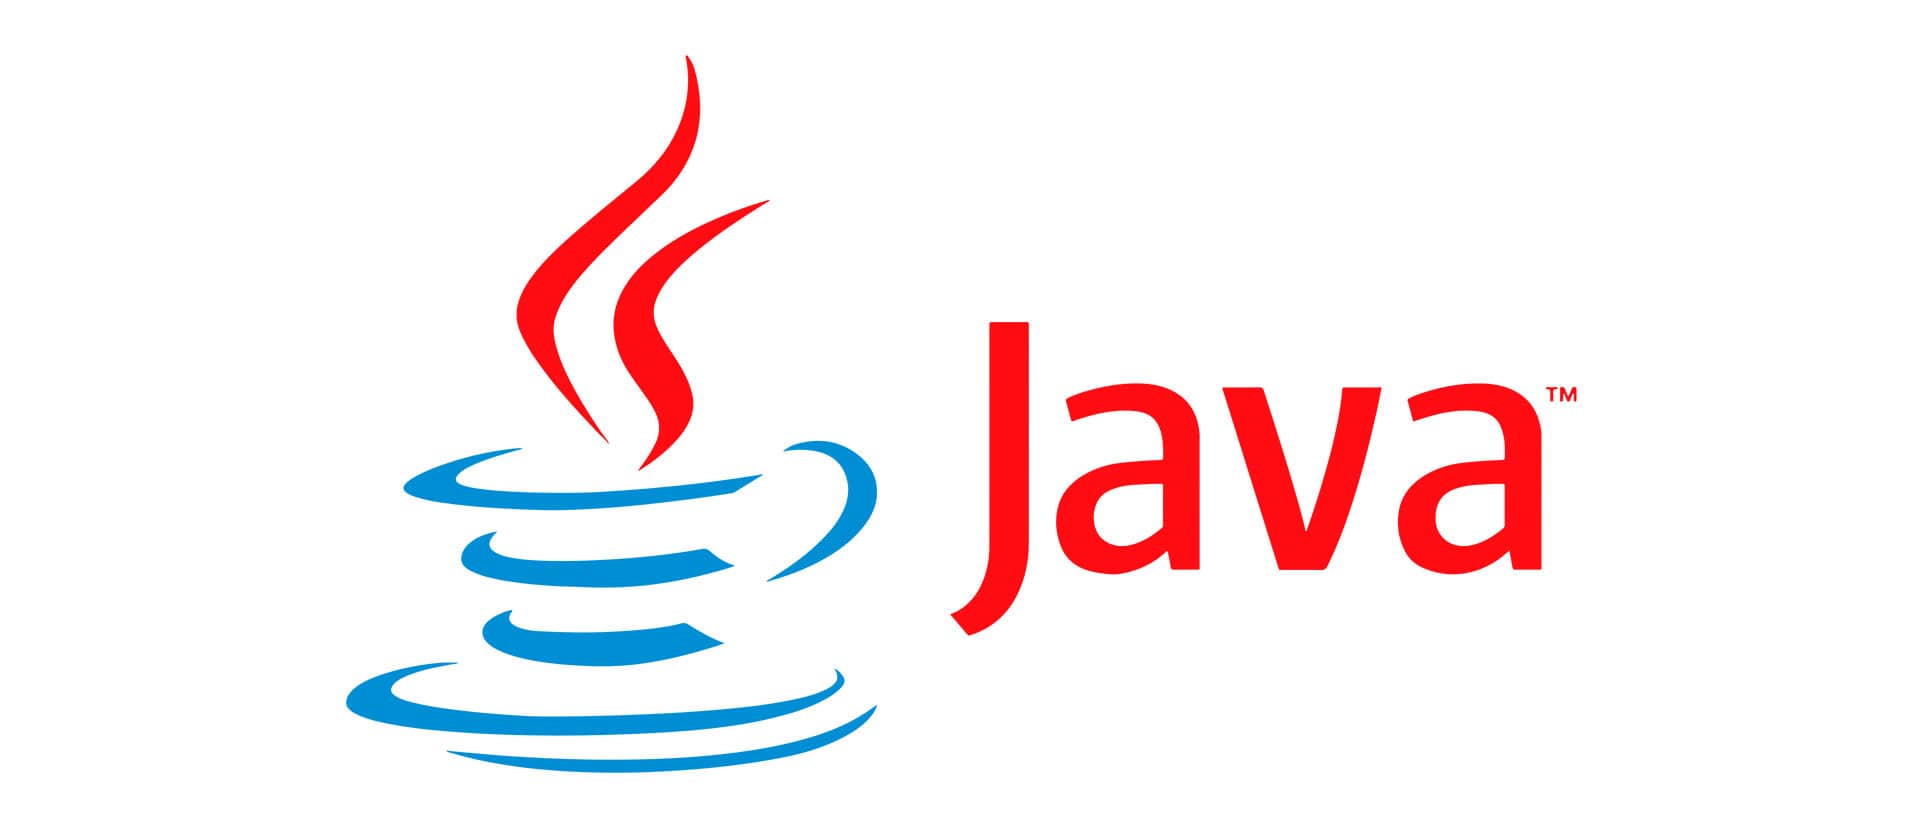 J java. Java язык программирования logo. Jvaязык программирования логотип. Джава язык программирования логотип. Жавалоготип язык программирования.